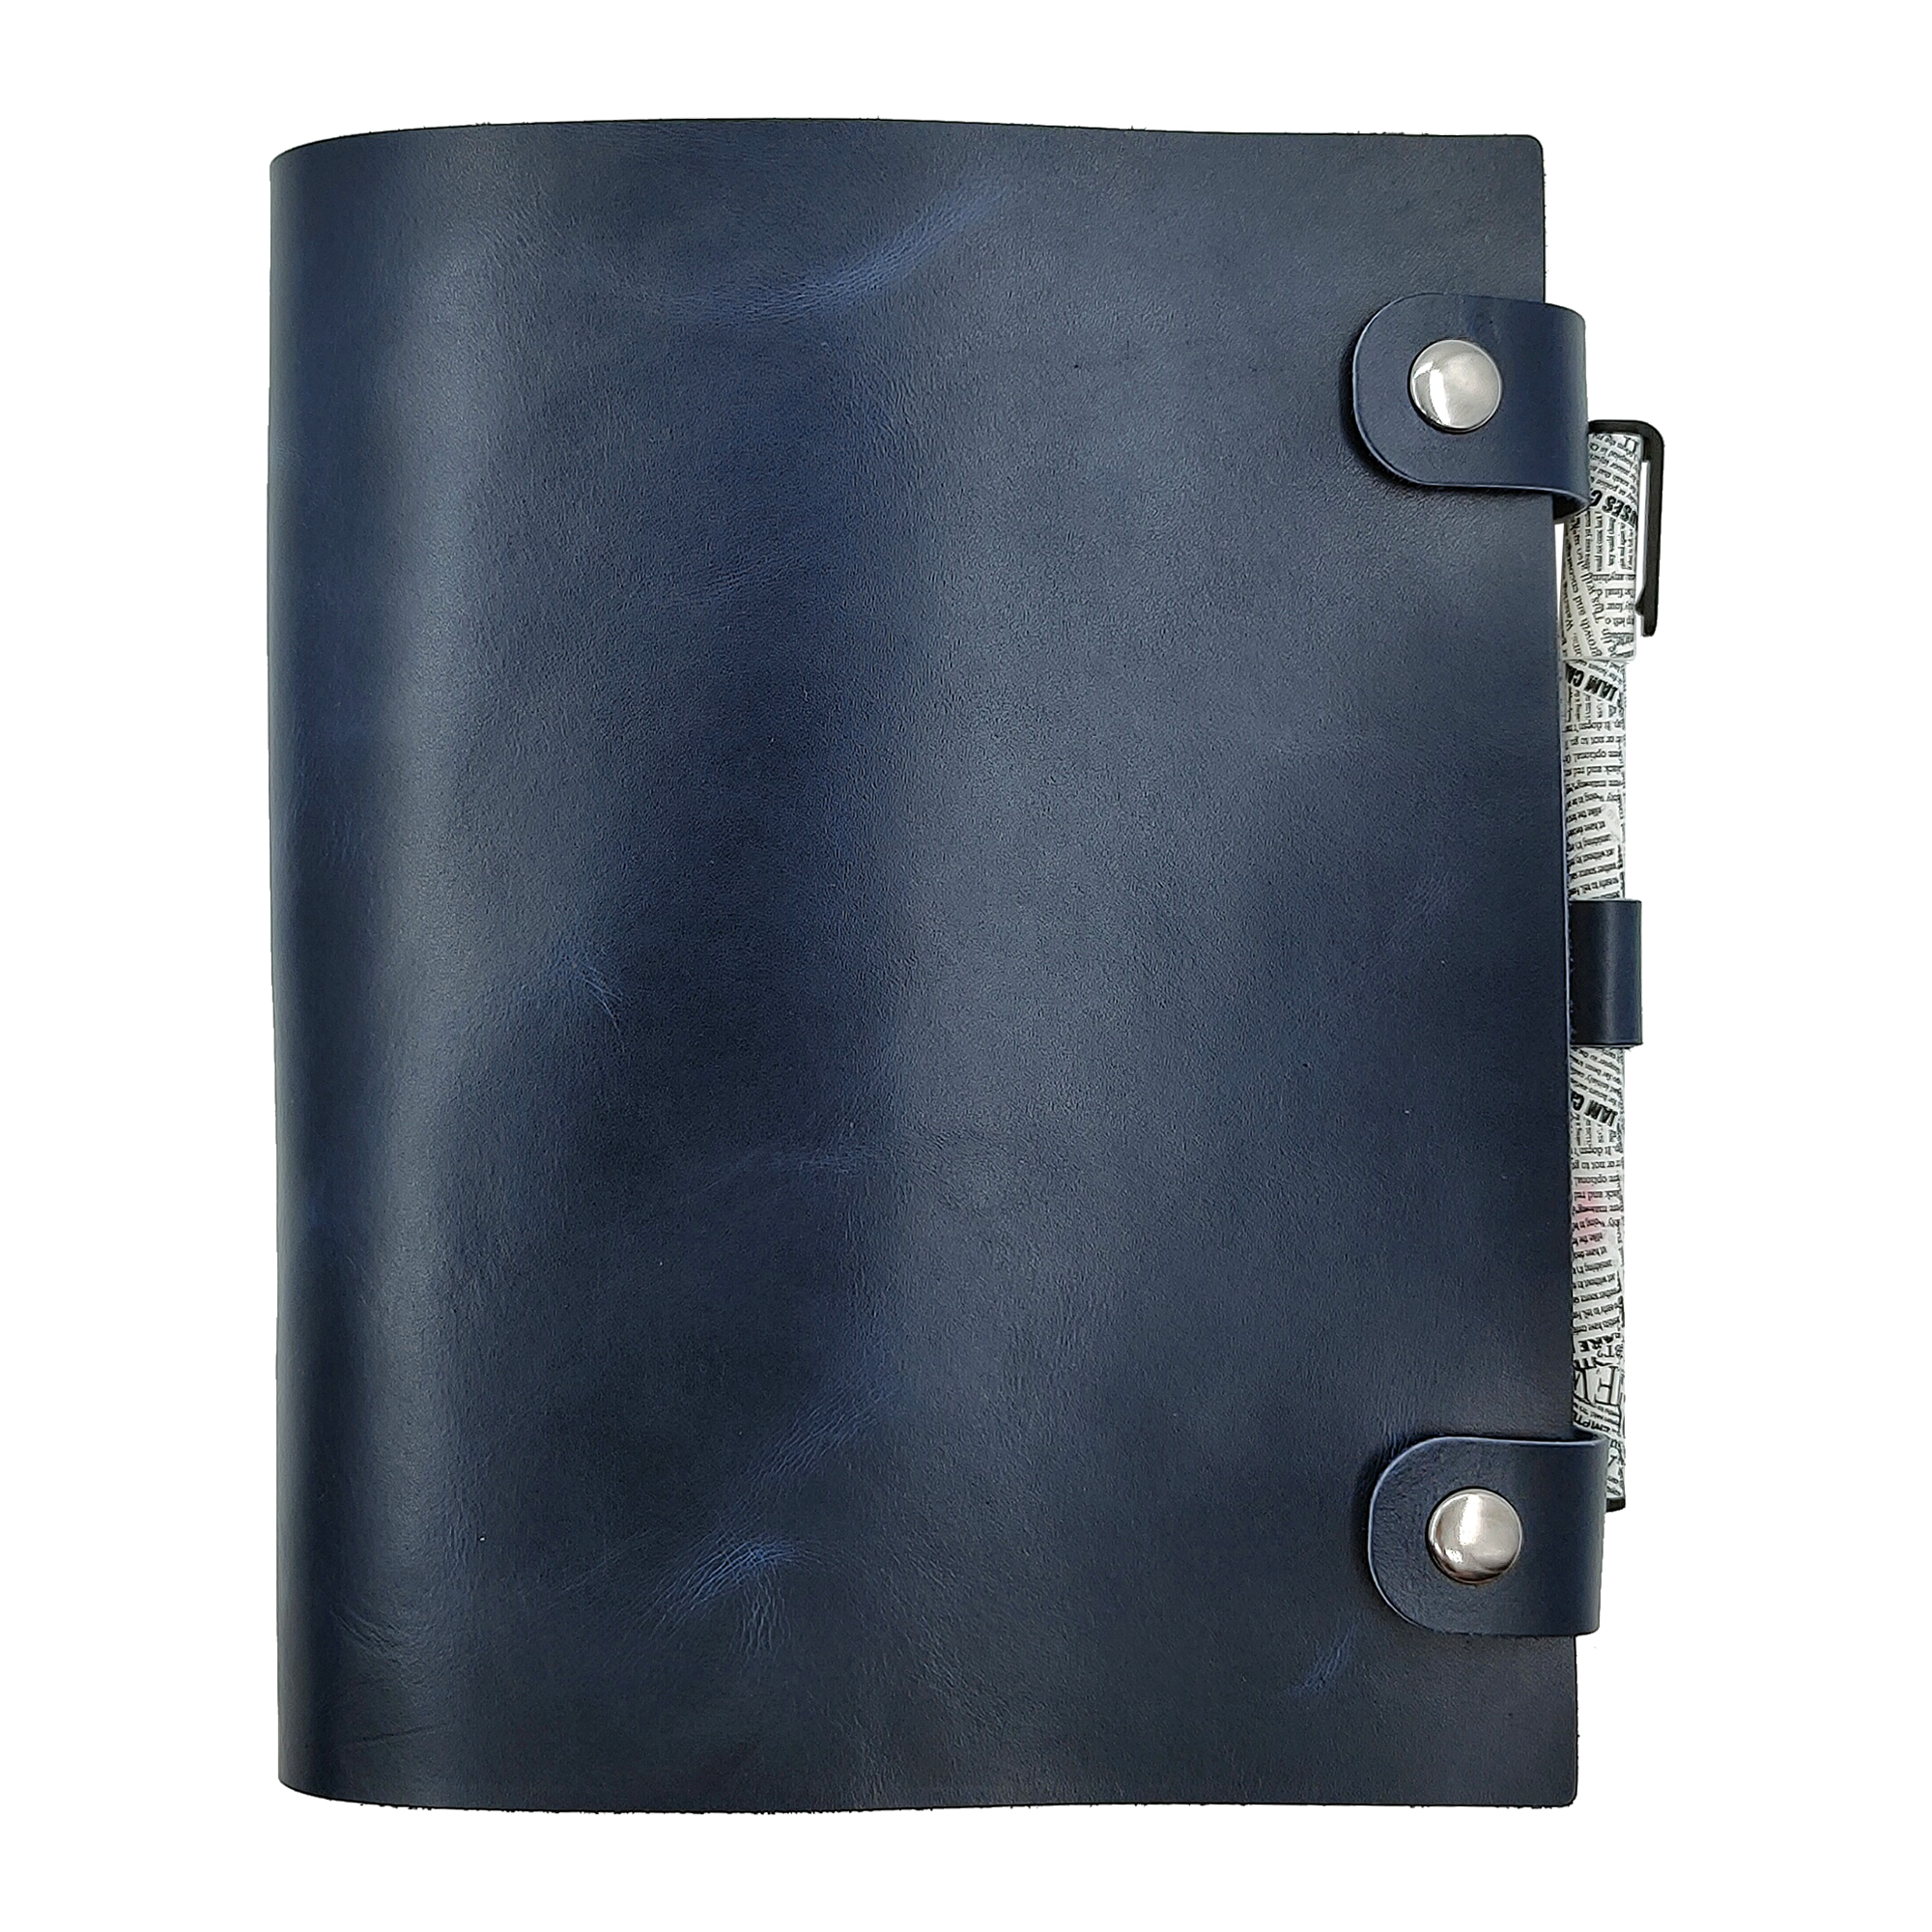 Кожаный ежедневник (блокнот) Shiva Leather А5 формата на кольцевом механизме Темно-синий